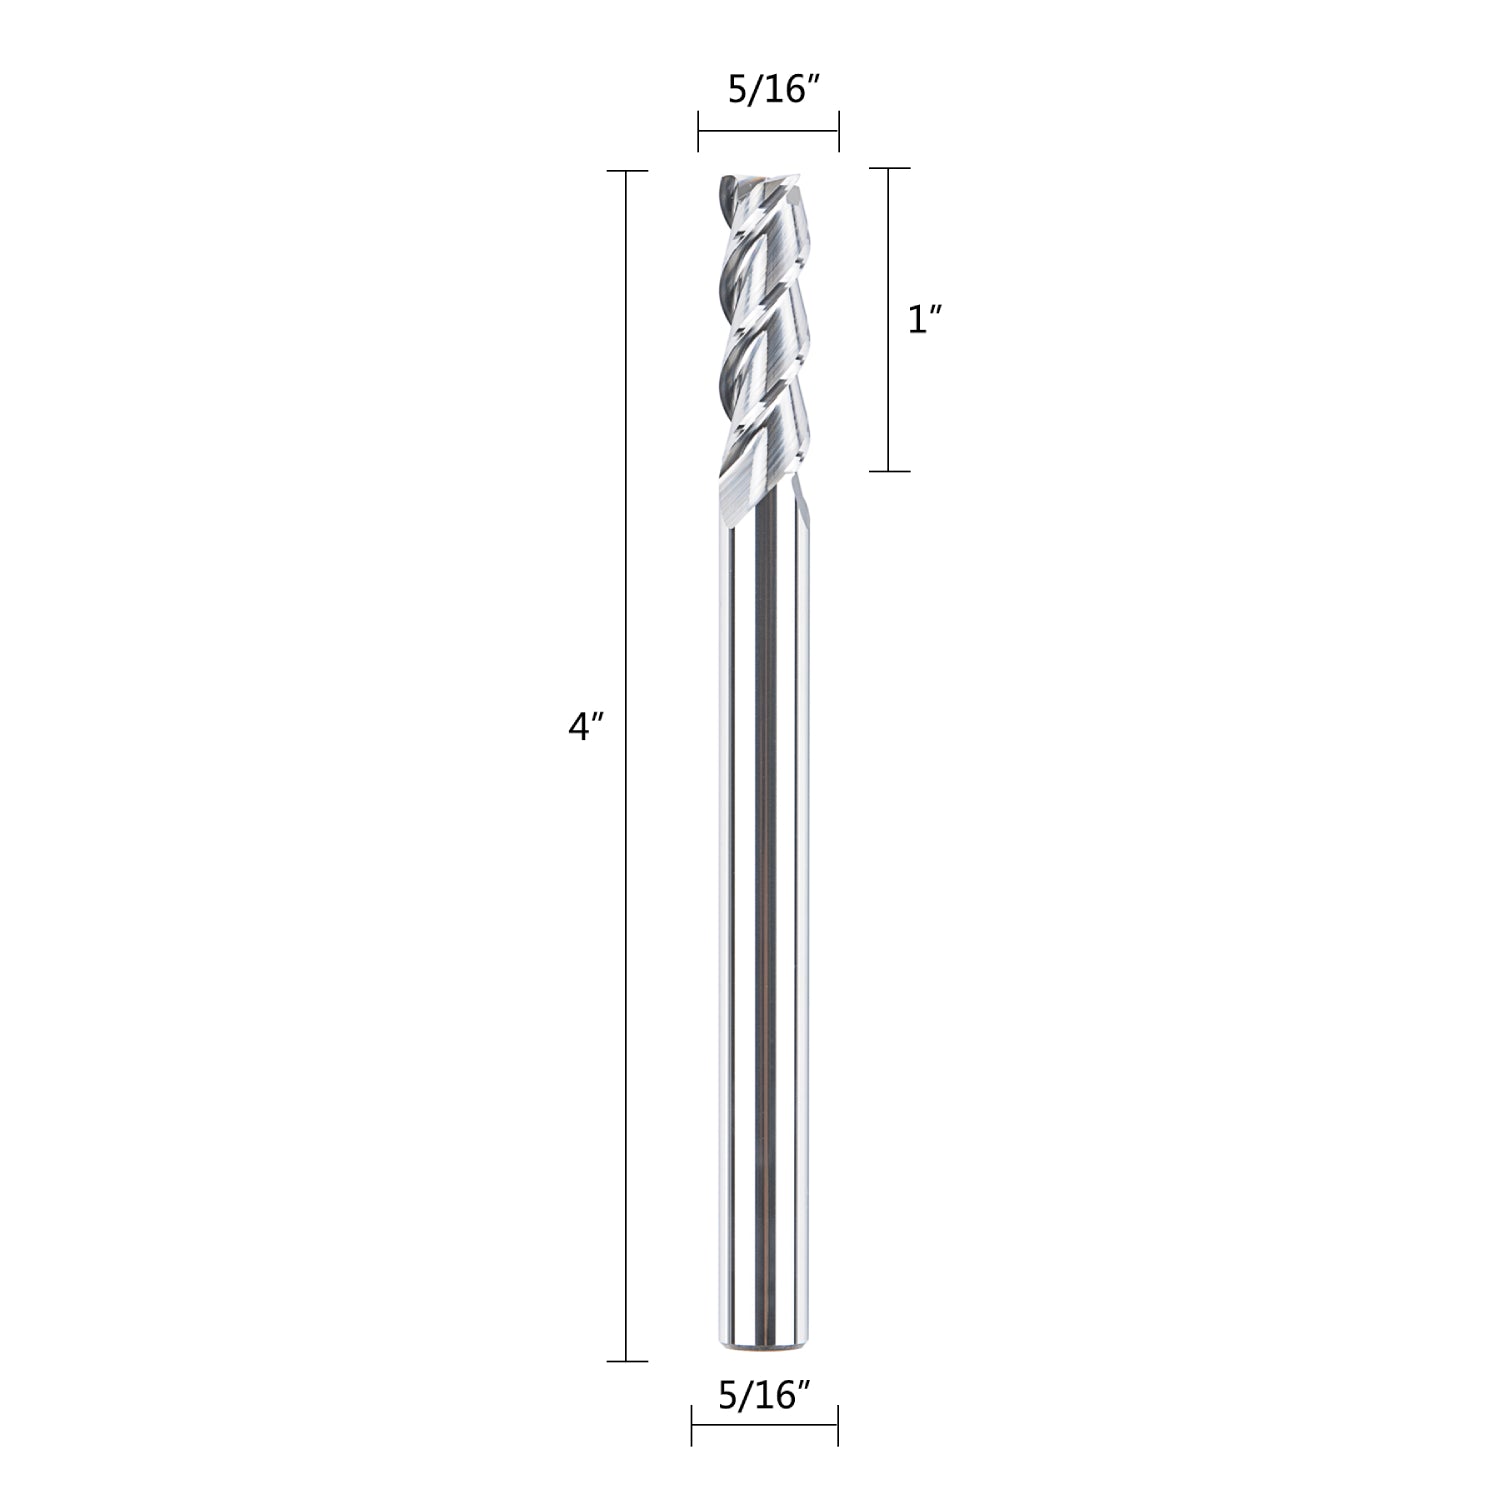 SpeTool 3 Flutes 5/16" Dia End Mill For Aluminum Cut 4" Extra Long Bit